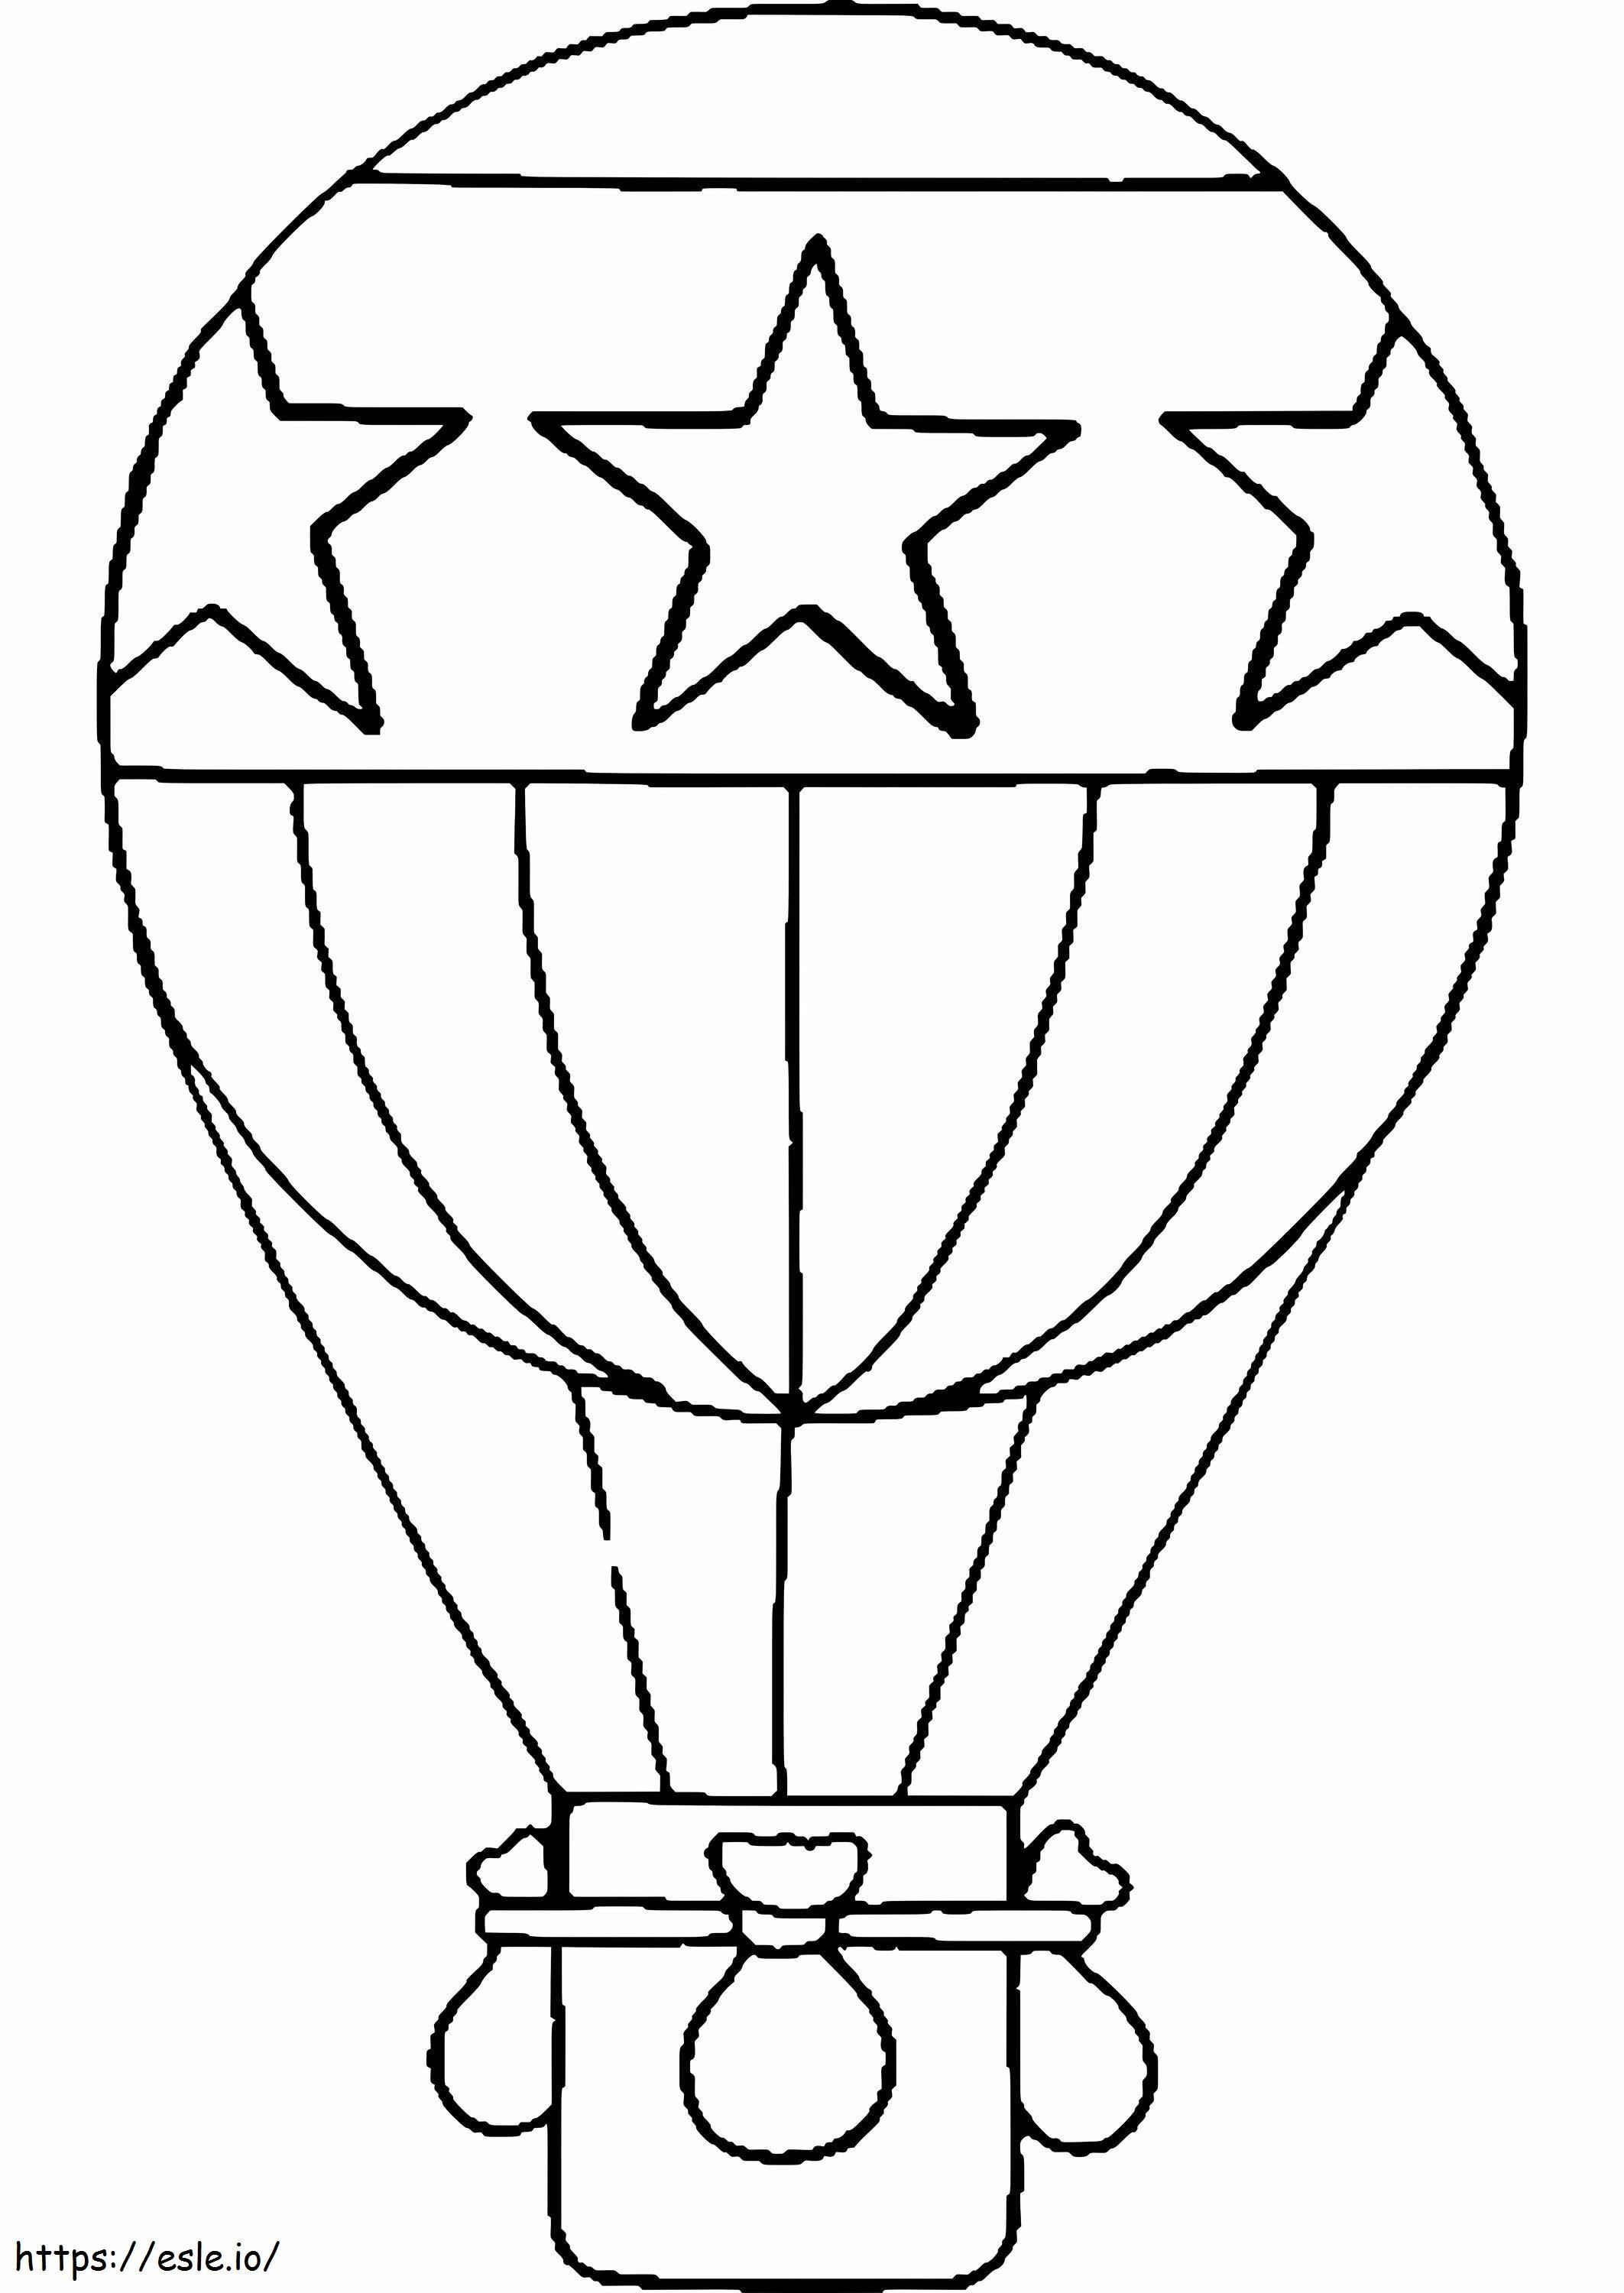 Schema de balon cu aer cald la scară de colorat